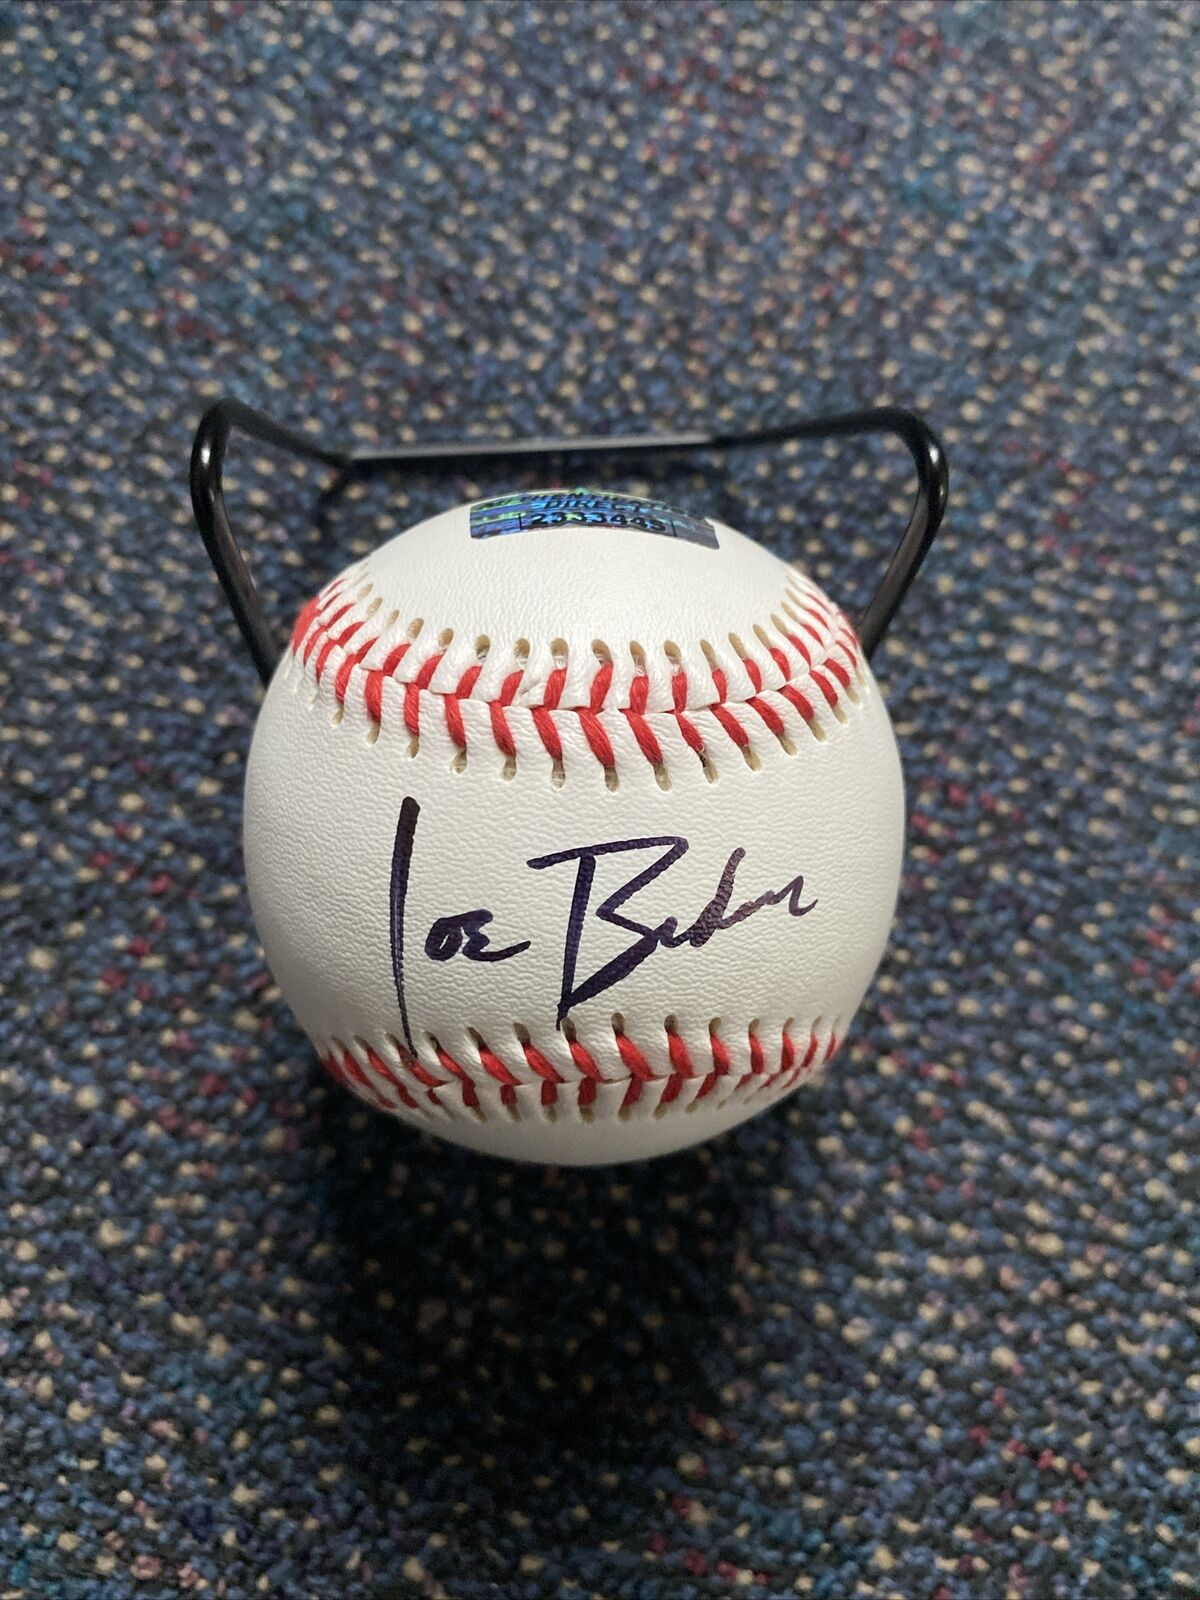 Joe Biden Signed Autograph Baseball Coa